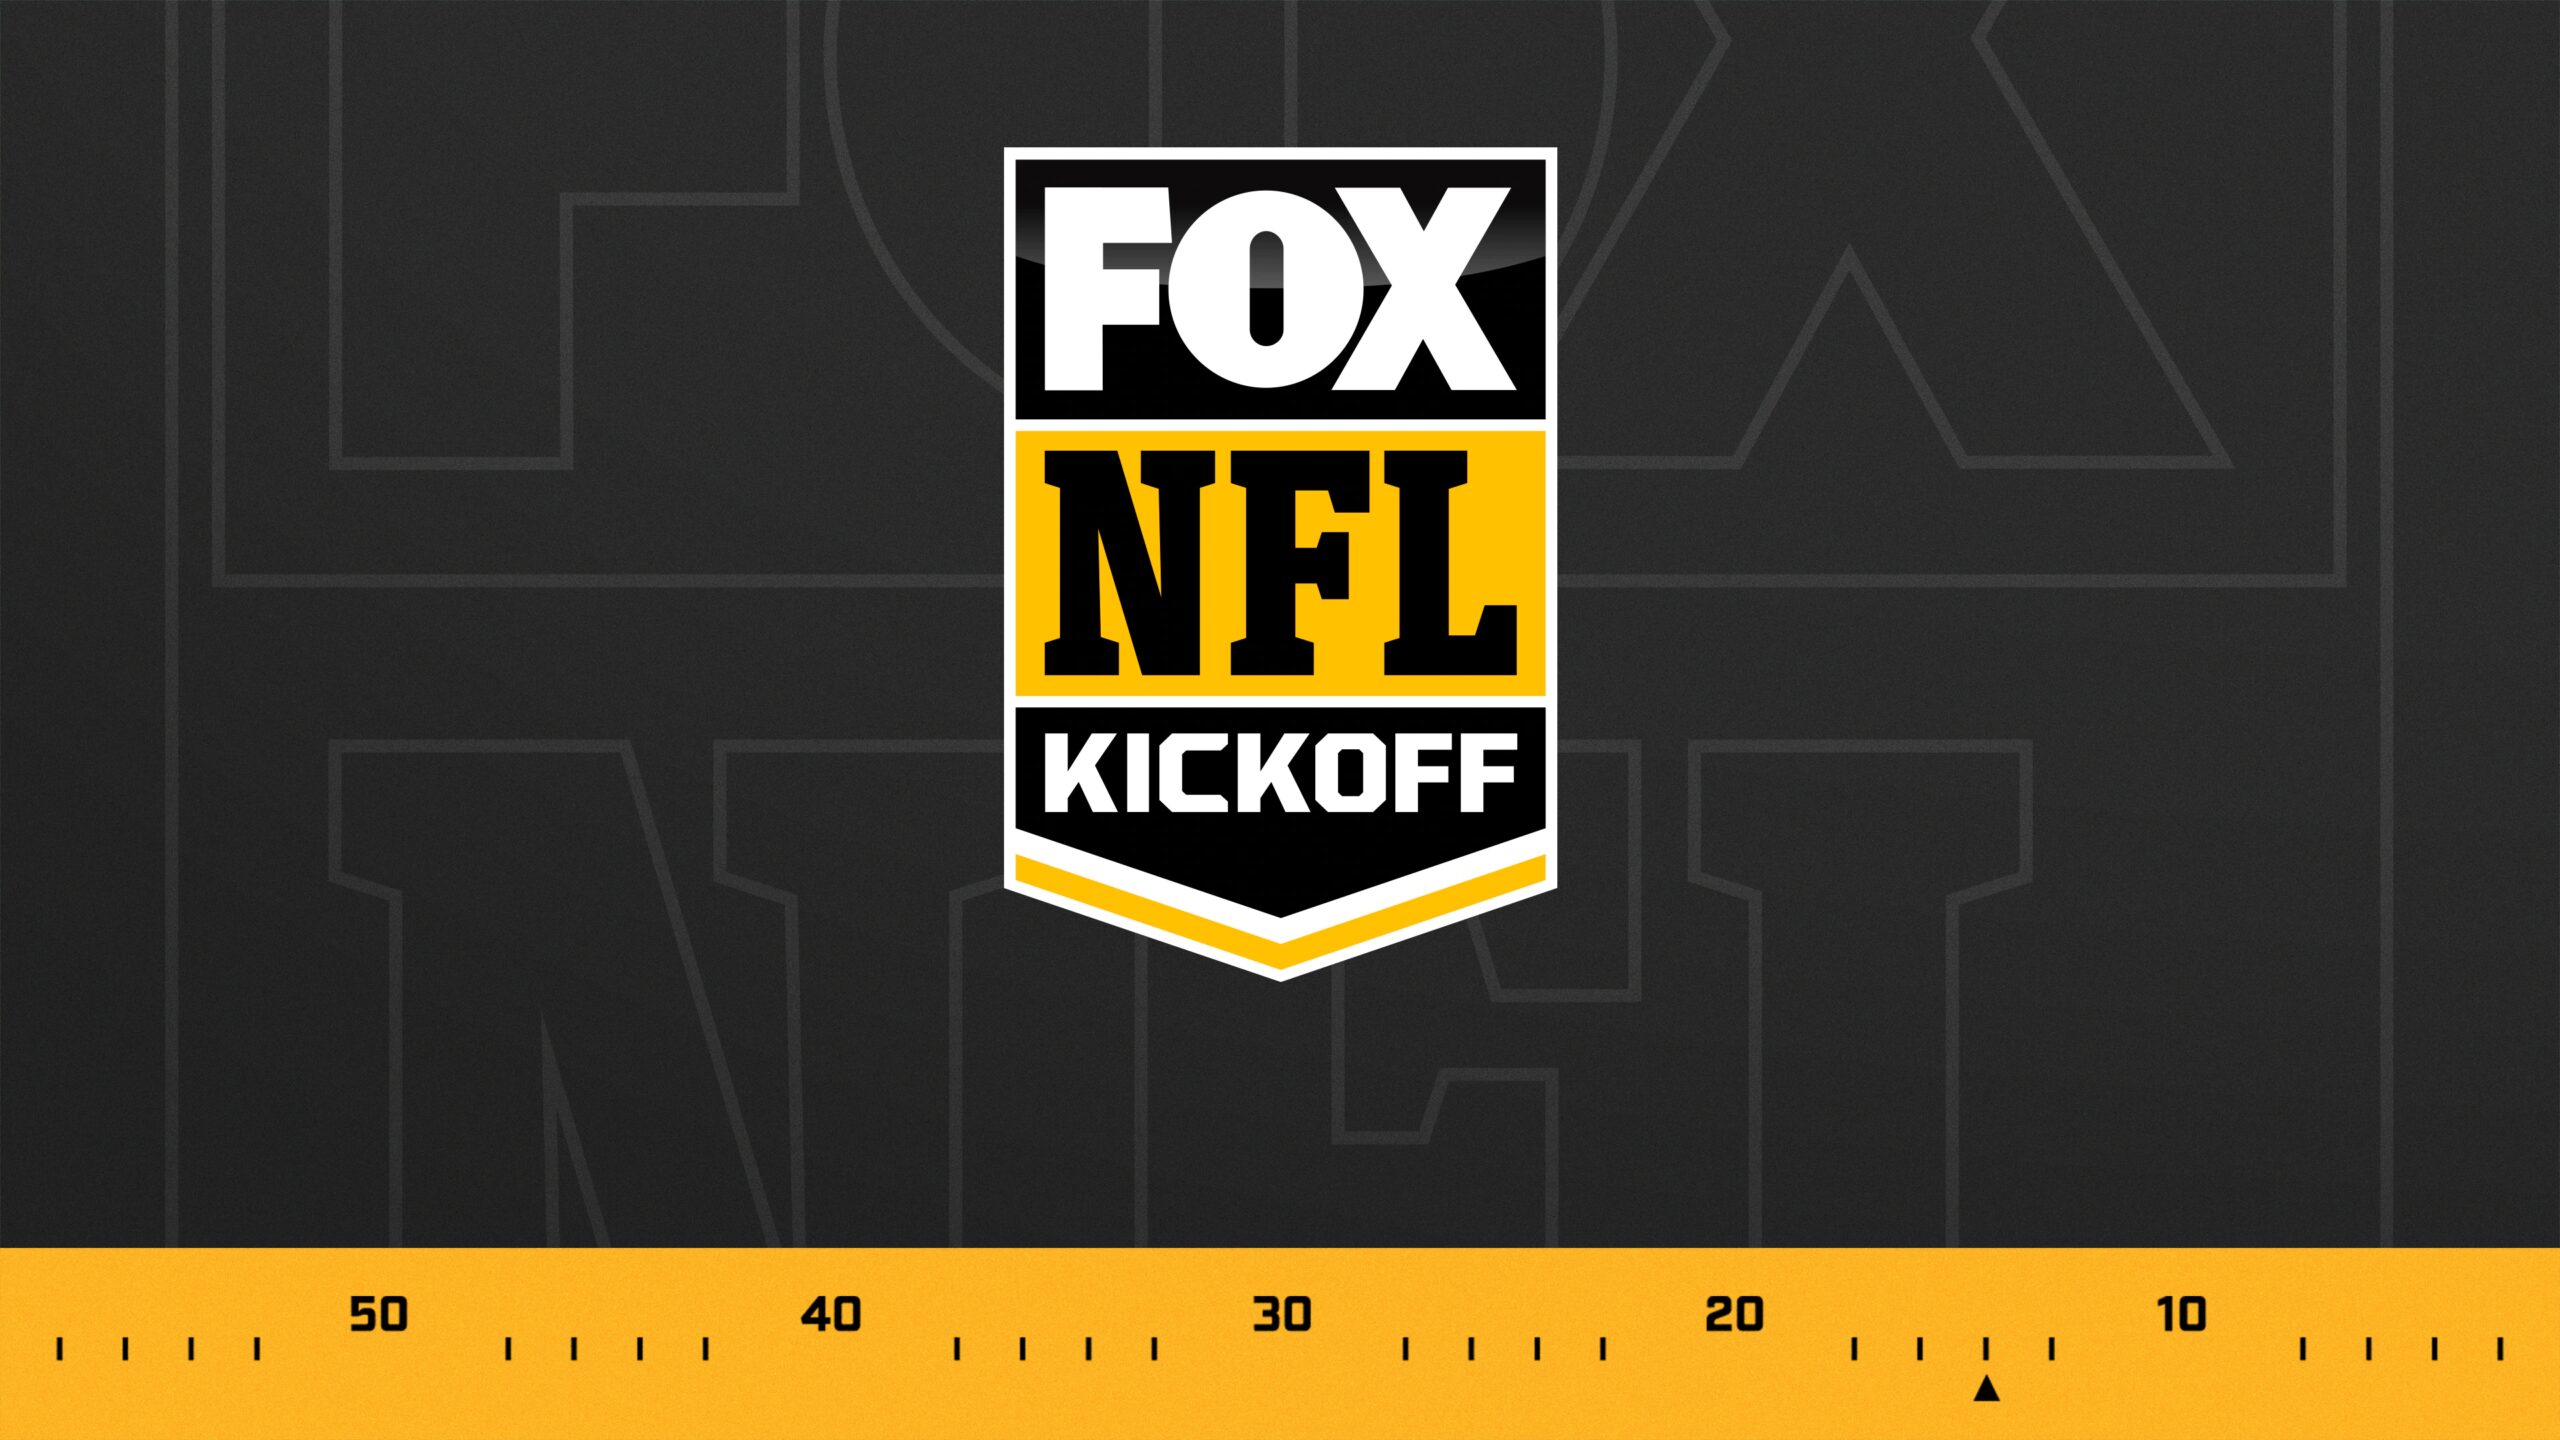 FOX Sports Adds Three-Time Super Bowl Champion Julian Edelman to "FOX NFL Kickoff"